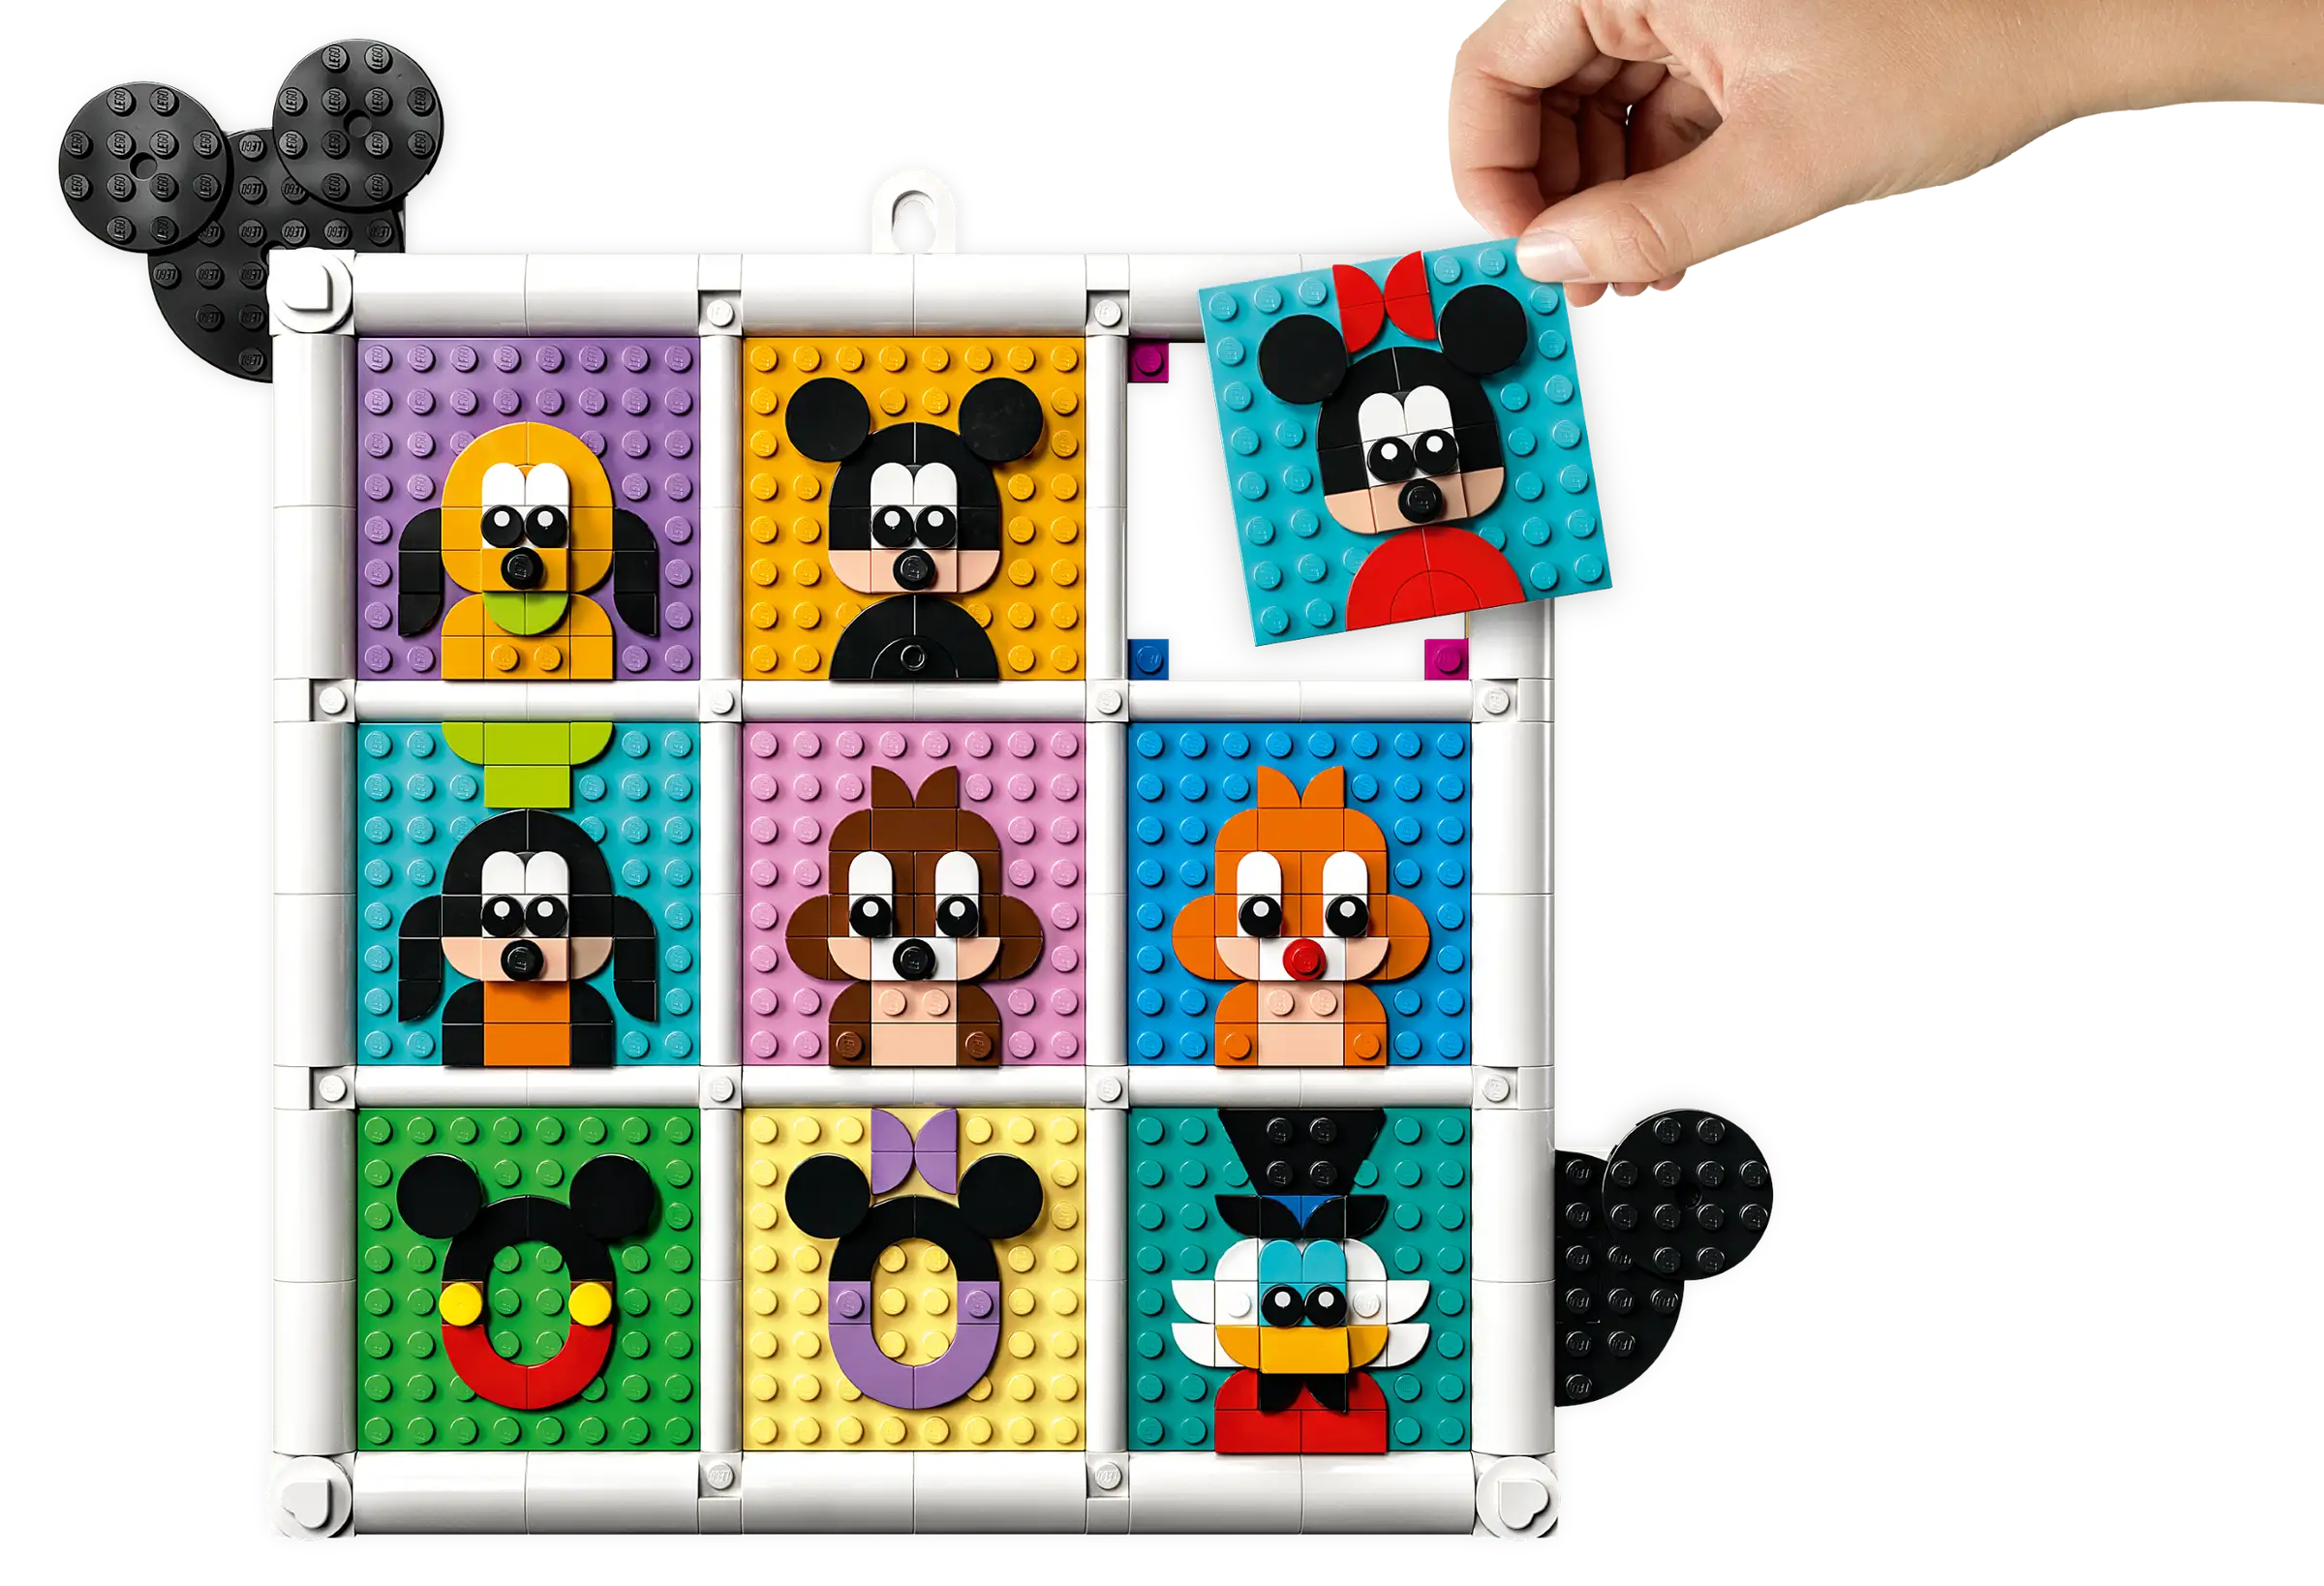 LEGO Disney Classic Disney 100 Iconos De La Animacion Disney 43221